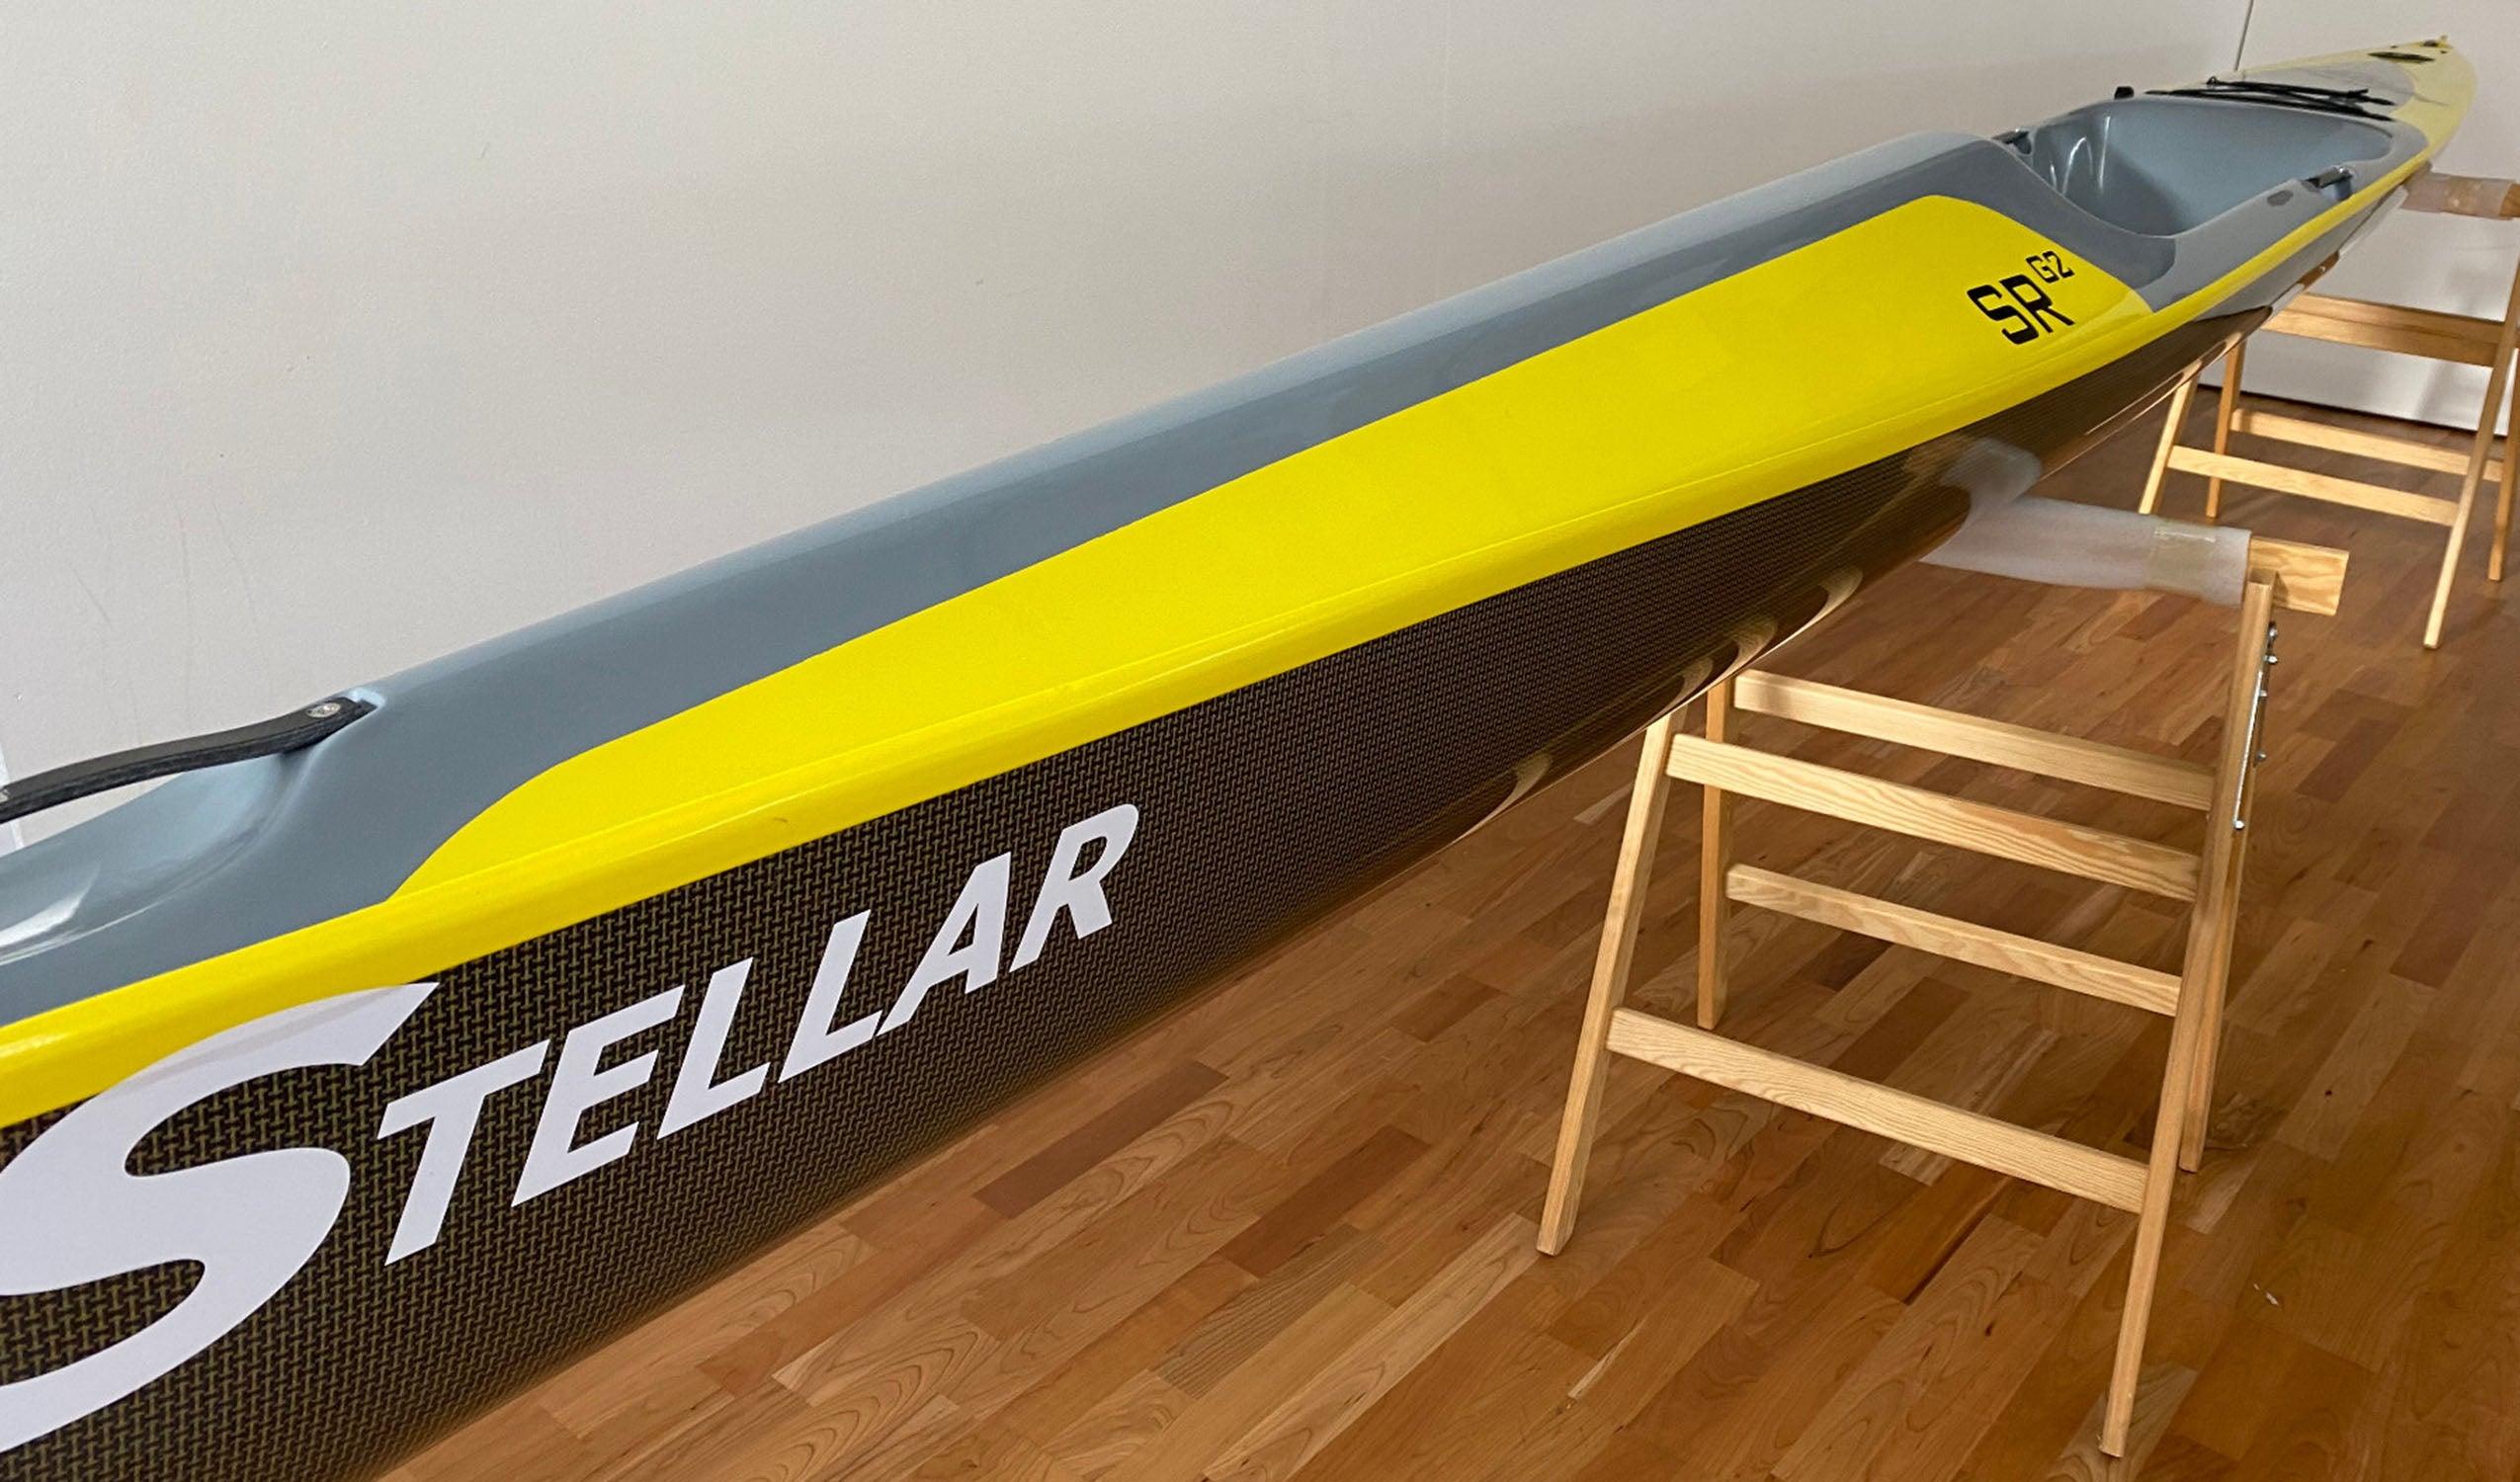 Produktbild von Kajak " SR Multisport-gelb grau " der Marke STELLAR Lightweight für 2690.00 €. Erhältlich online bei Lite Venture ( www.liteventure.de )